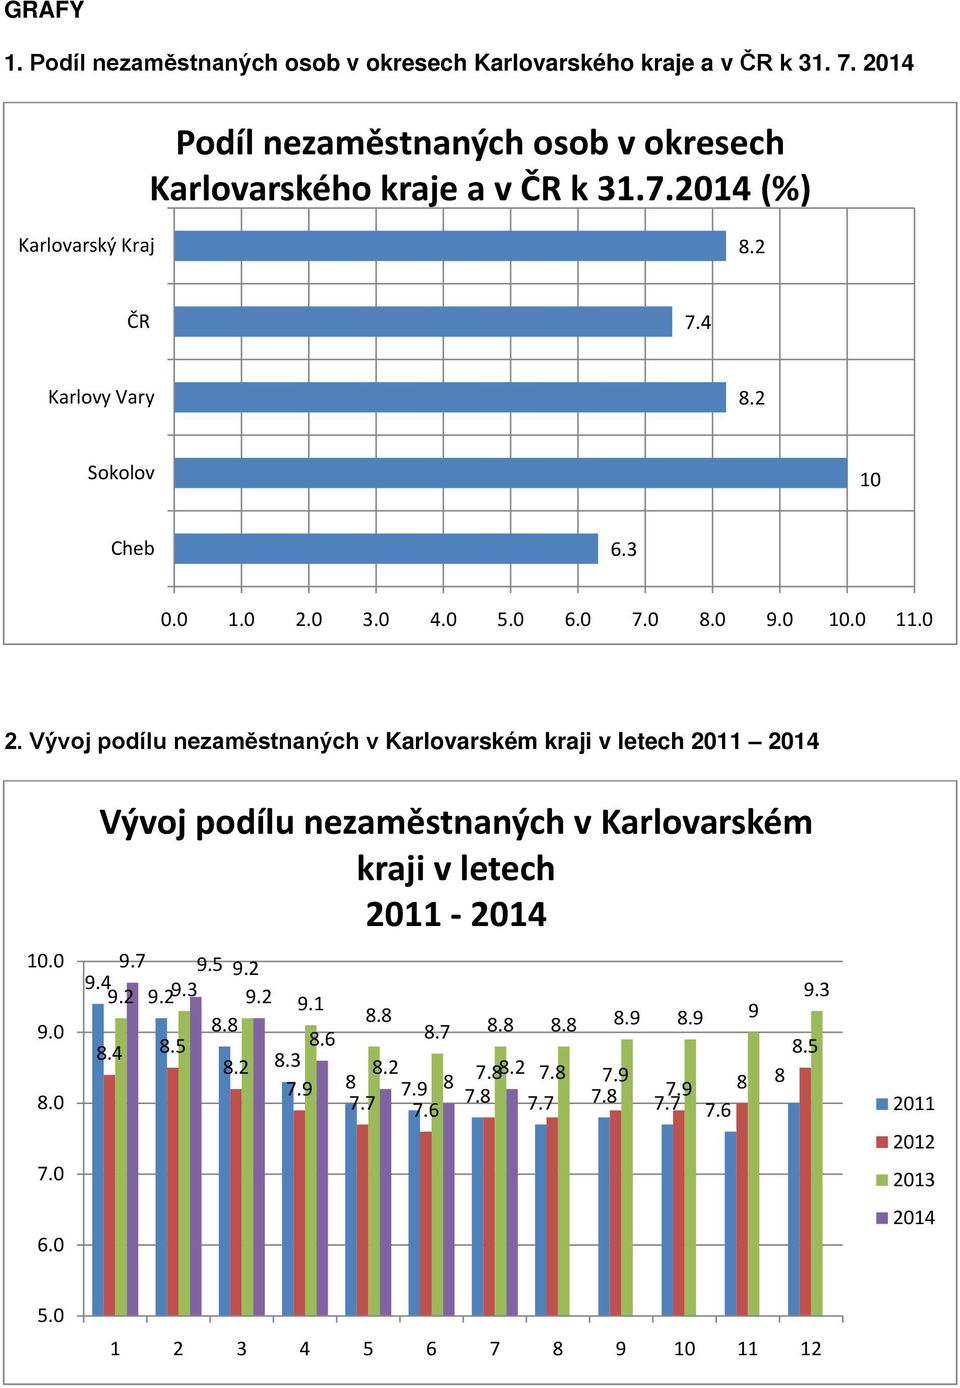 0 9.0 8.0 7.0 6.0 Vývoj podílu nezaměstnaných v Karlovarském kraji v letech 2011-2014 9.7 9.5 9.2 9.4 9.2 9.29.3 9.2 9.1 8.8 8.8 8.7 8.8 8.8 8.9 8.9 9 8.4 8.5 8.